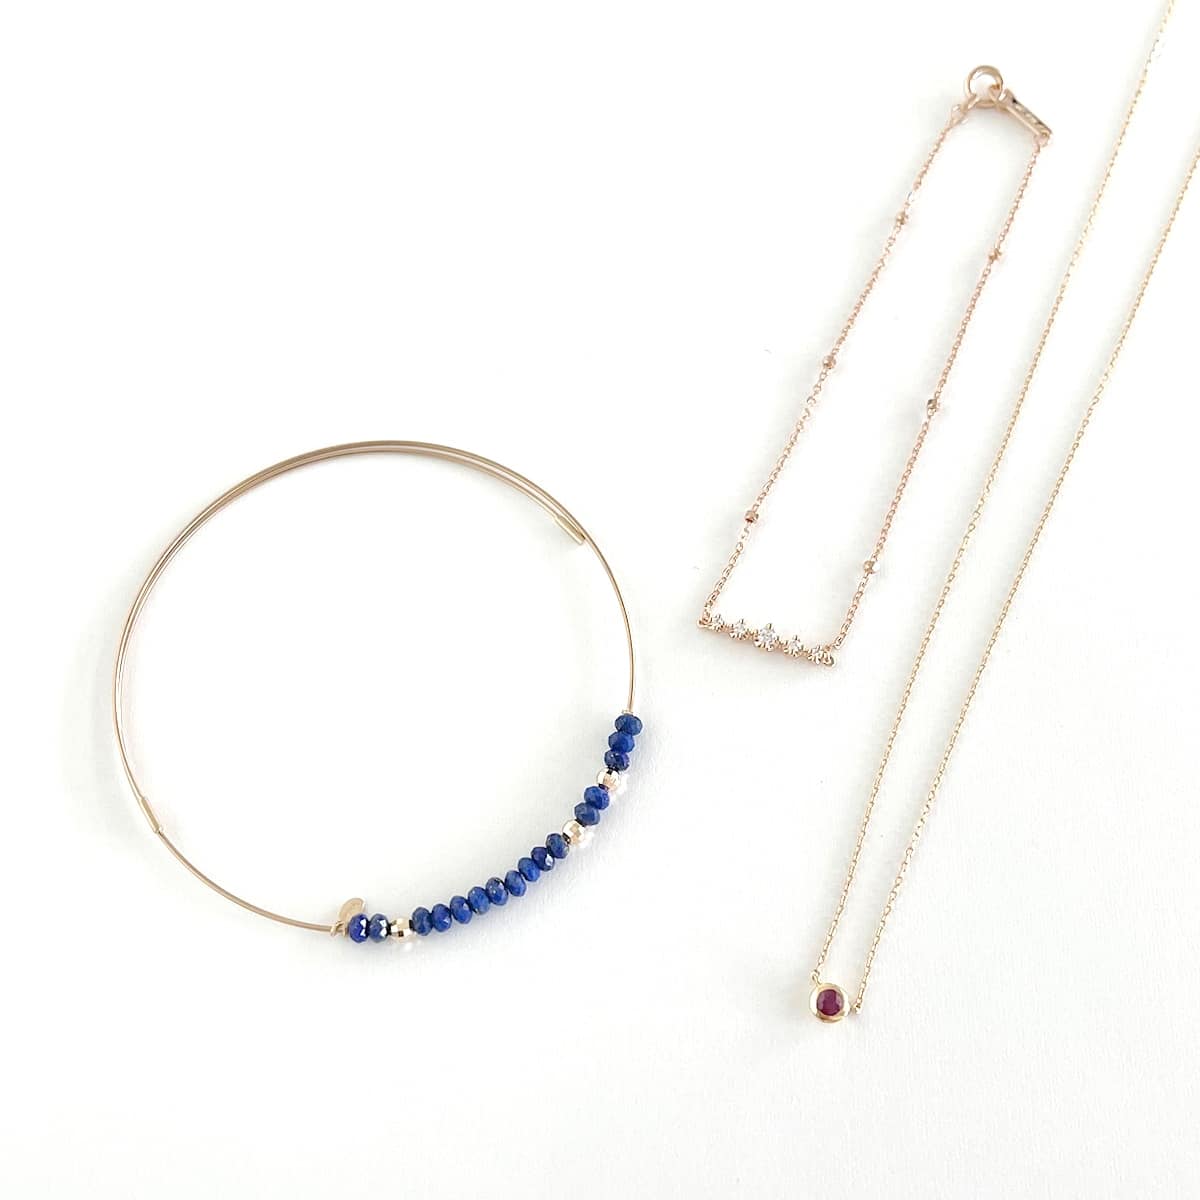 [Set Item] Multi-brand necklace bracelet set of 3